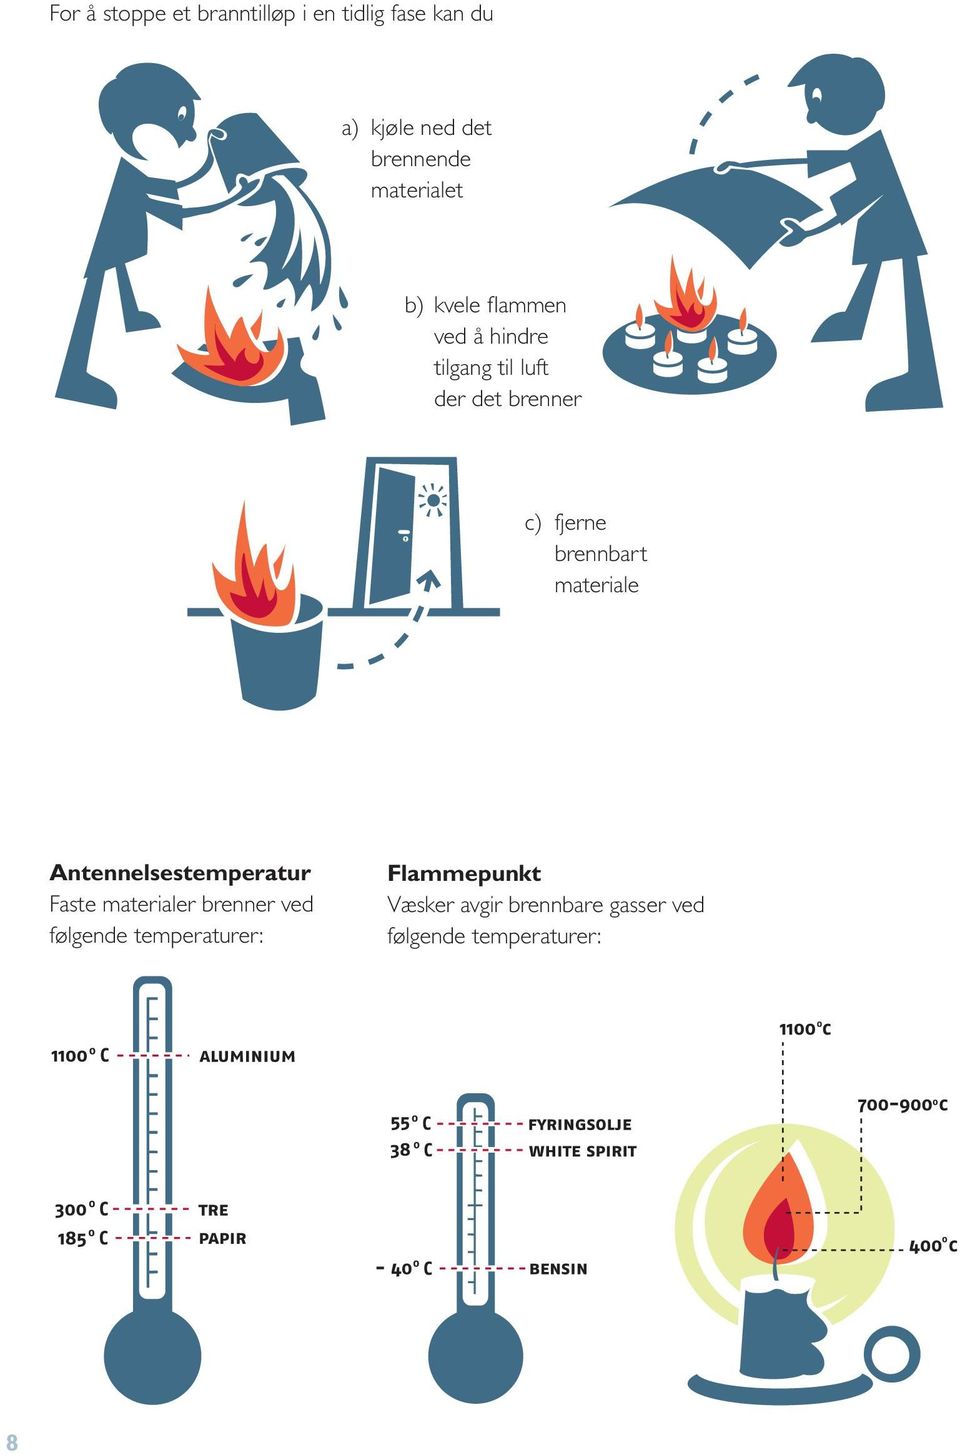 fjerne brennbart materiale Antennelsestemperatur Faste materialer brenner ved